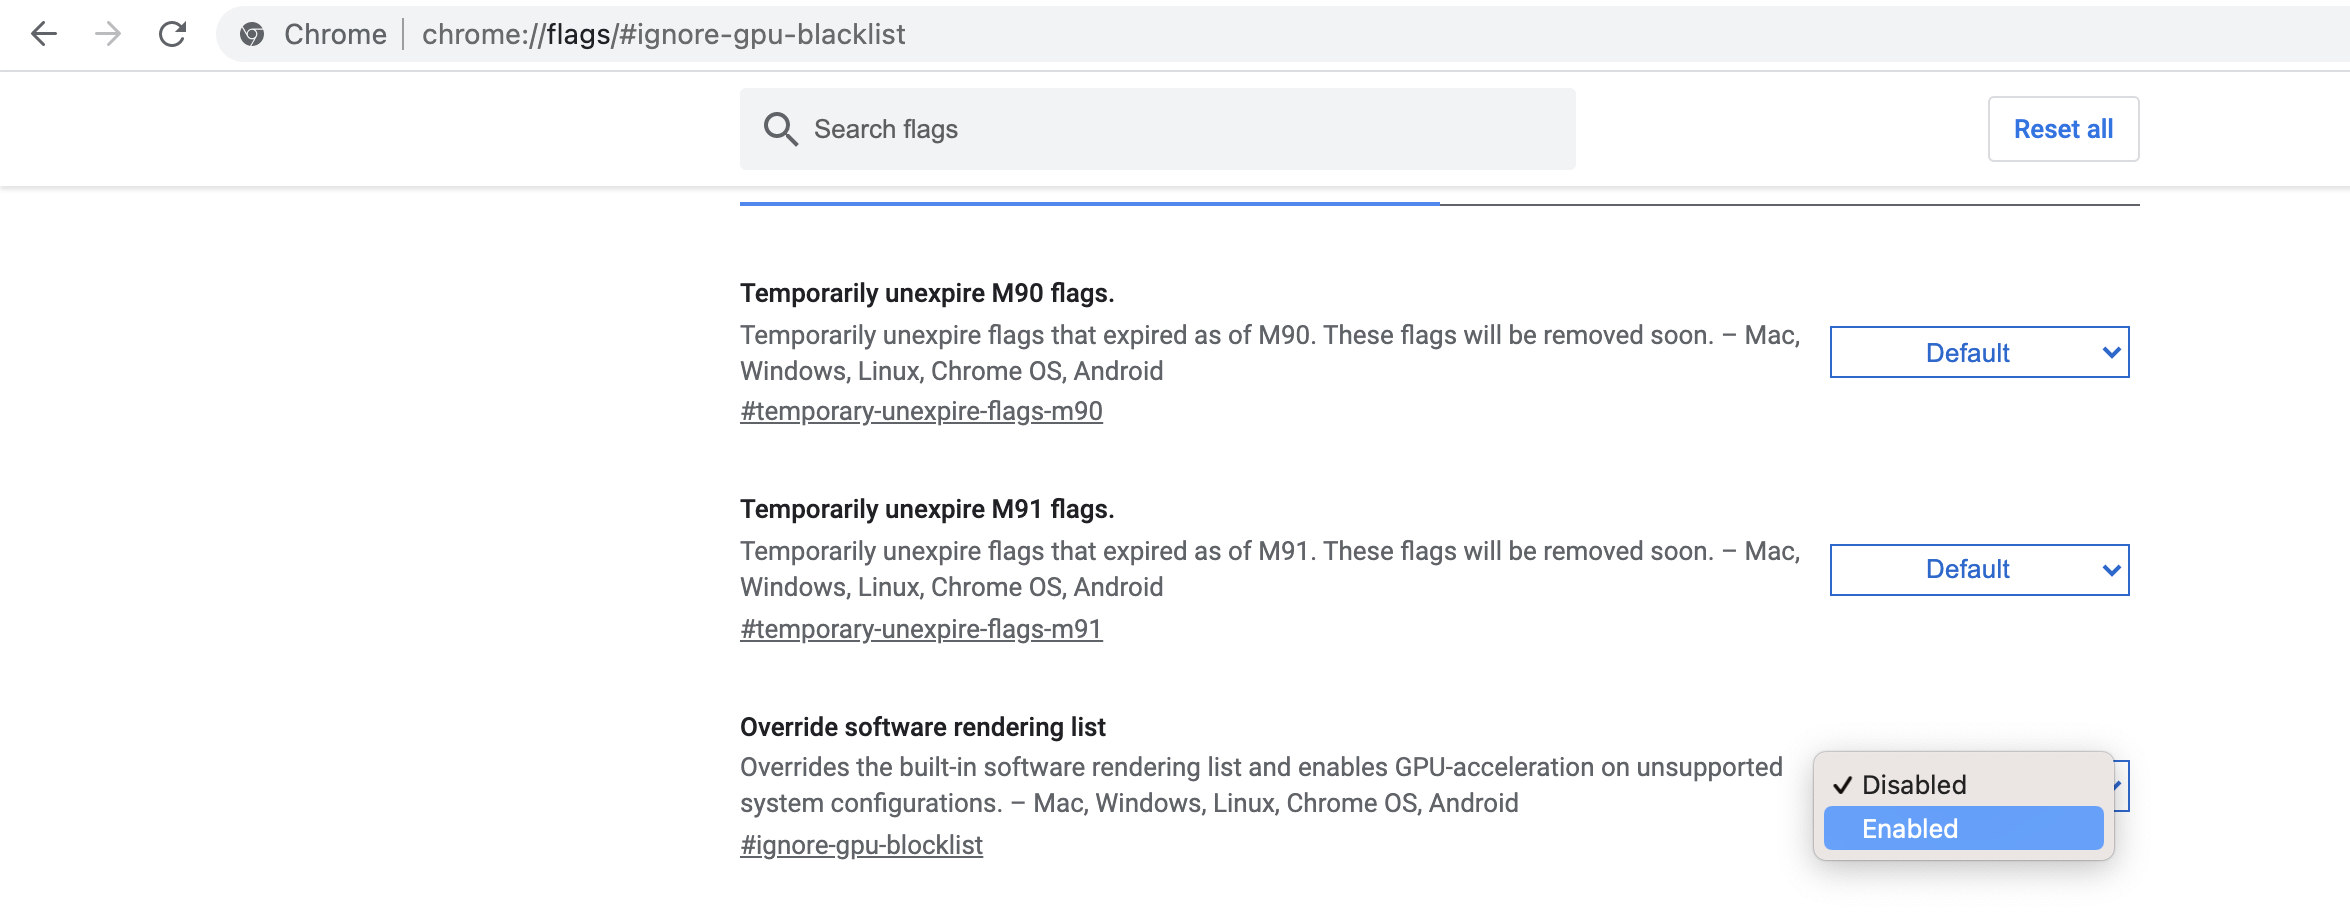 Зображення перезаписування списку рендерінгів програмного забезпечення в Google Chrome